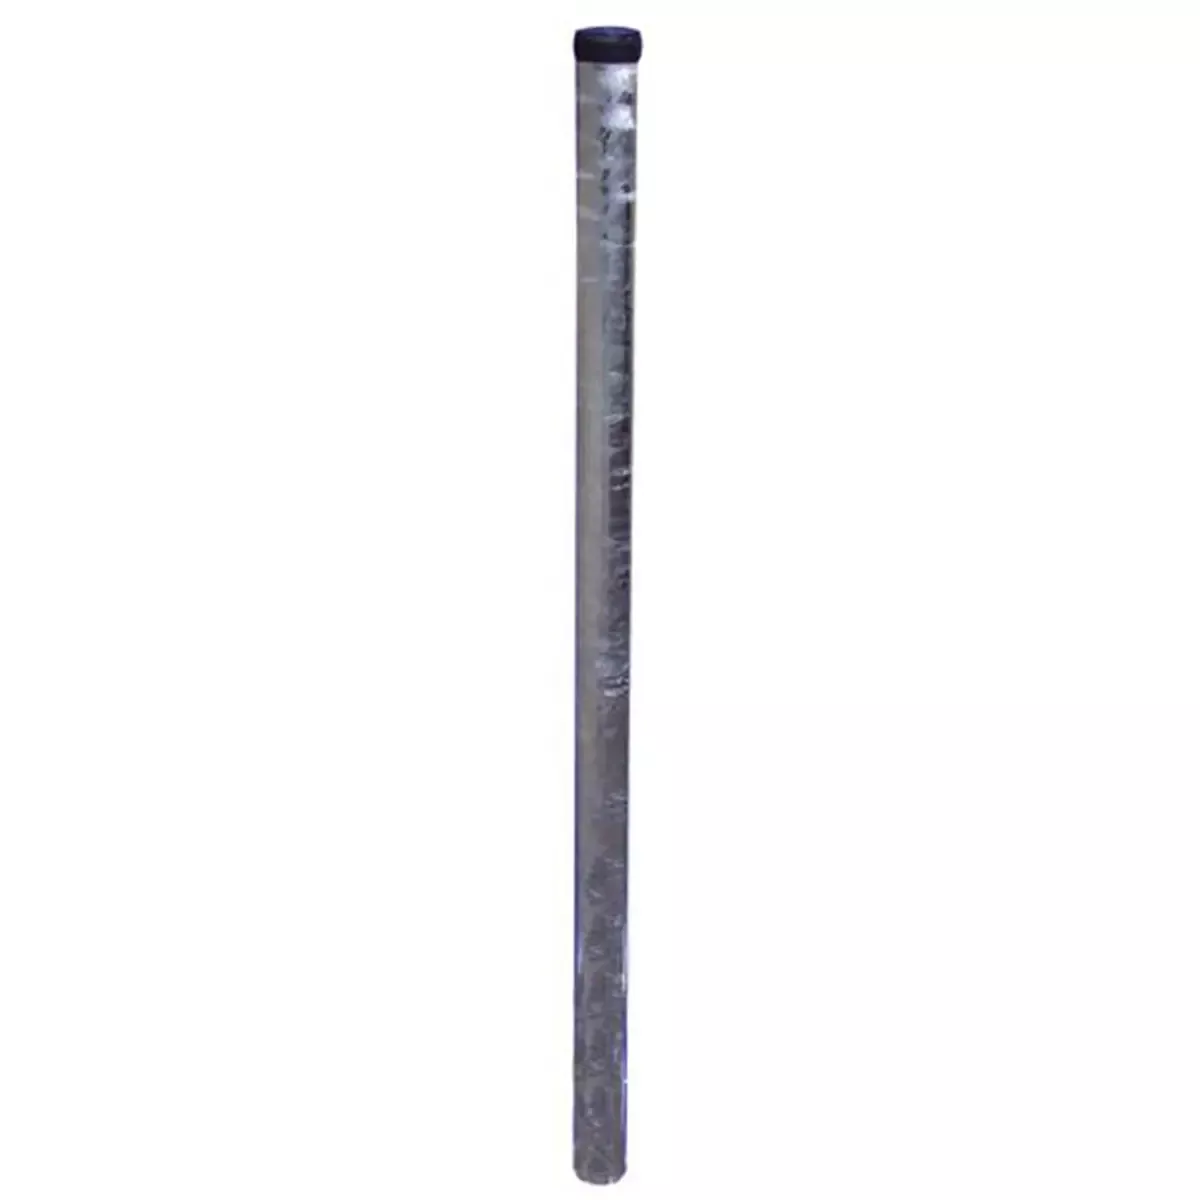 Rohrpfosten aus Stahl, ø 60 mm, Wandstärke 2,0 mm, Länge 3.250 mm, nach IVZ S132 Bild 1 von 4 für Befestigen und Montieren